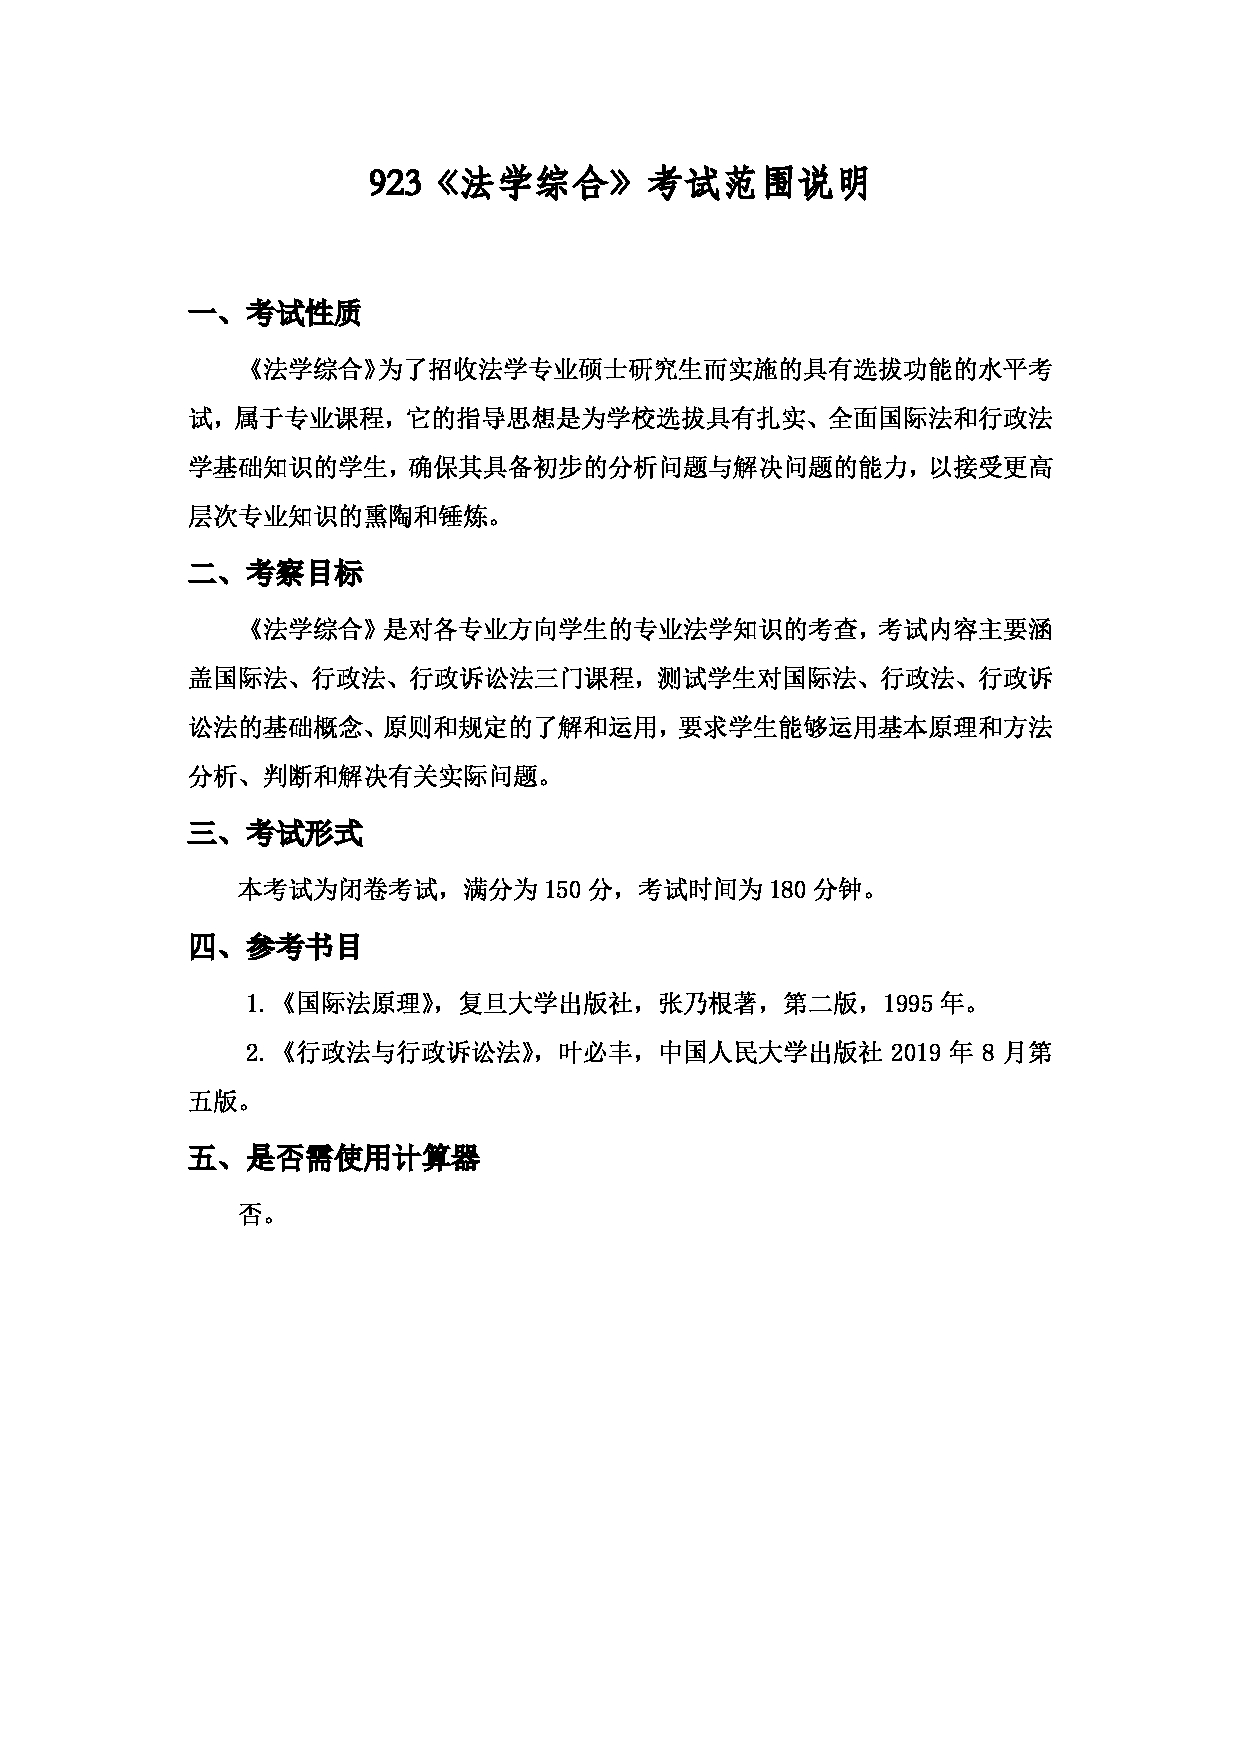 2022考研大纲：上海海洋大学2022年考研自命题科目 923法学综合 考试大纲第1页